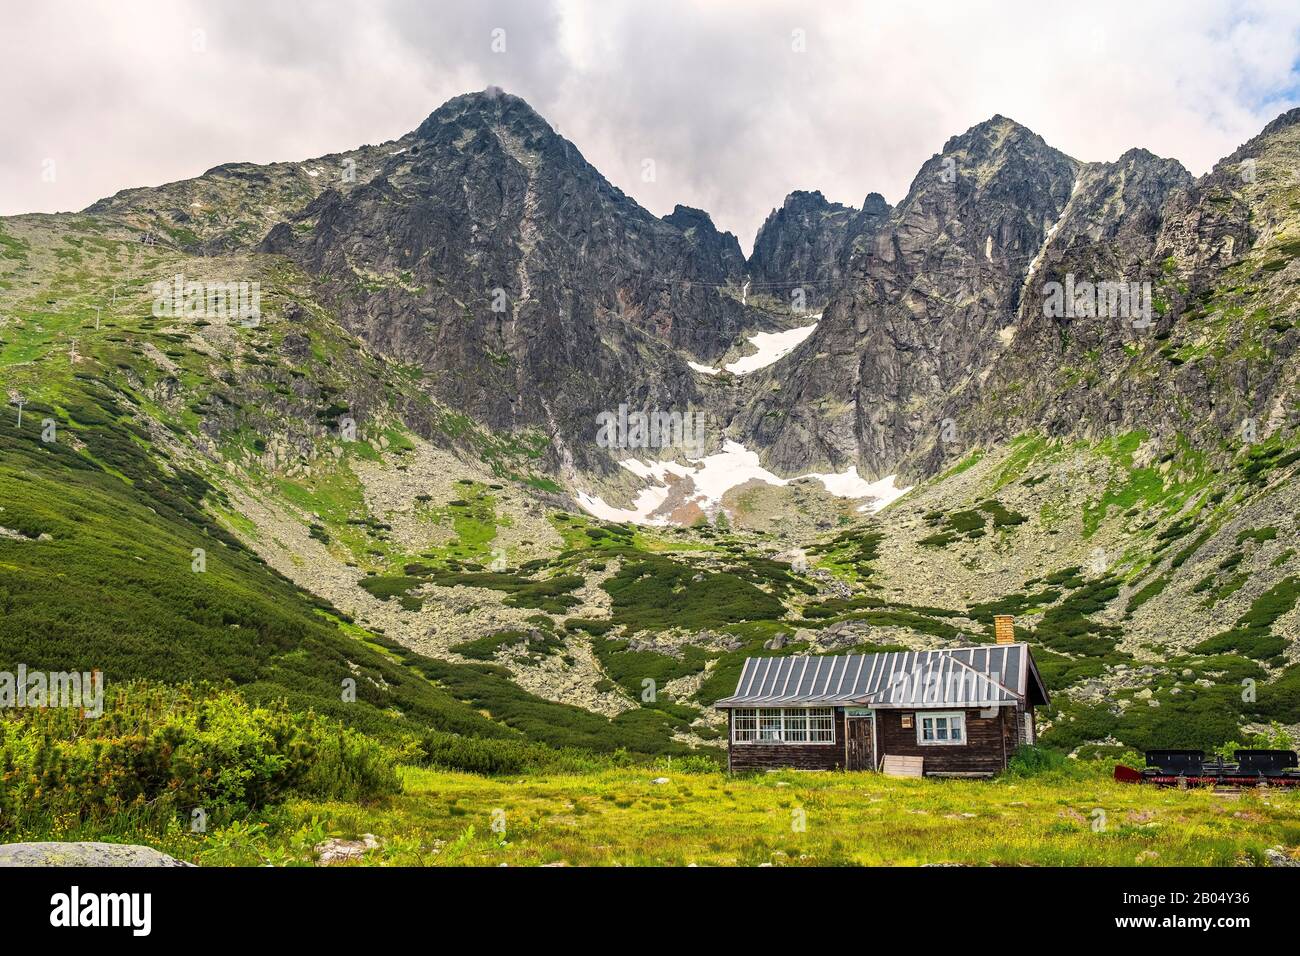 Tatranska Lomnica, Tatra Mountains / Slowakei - 2019/06/28: Panoramaaussicht auf den Lomnica-Gipfel in den slowakischen Tatra-Mountins - Lomicky stit Stockfoto